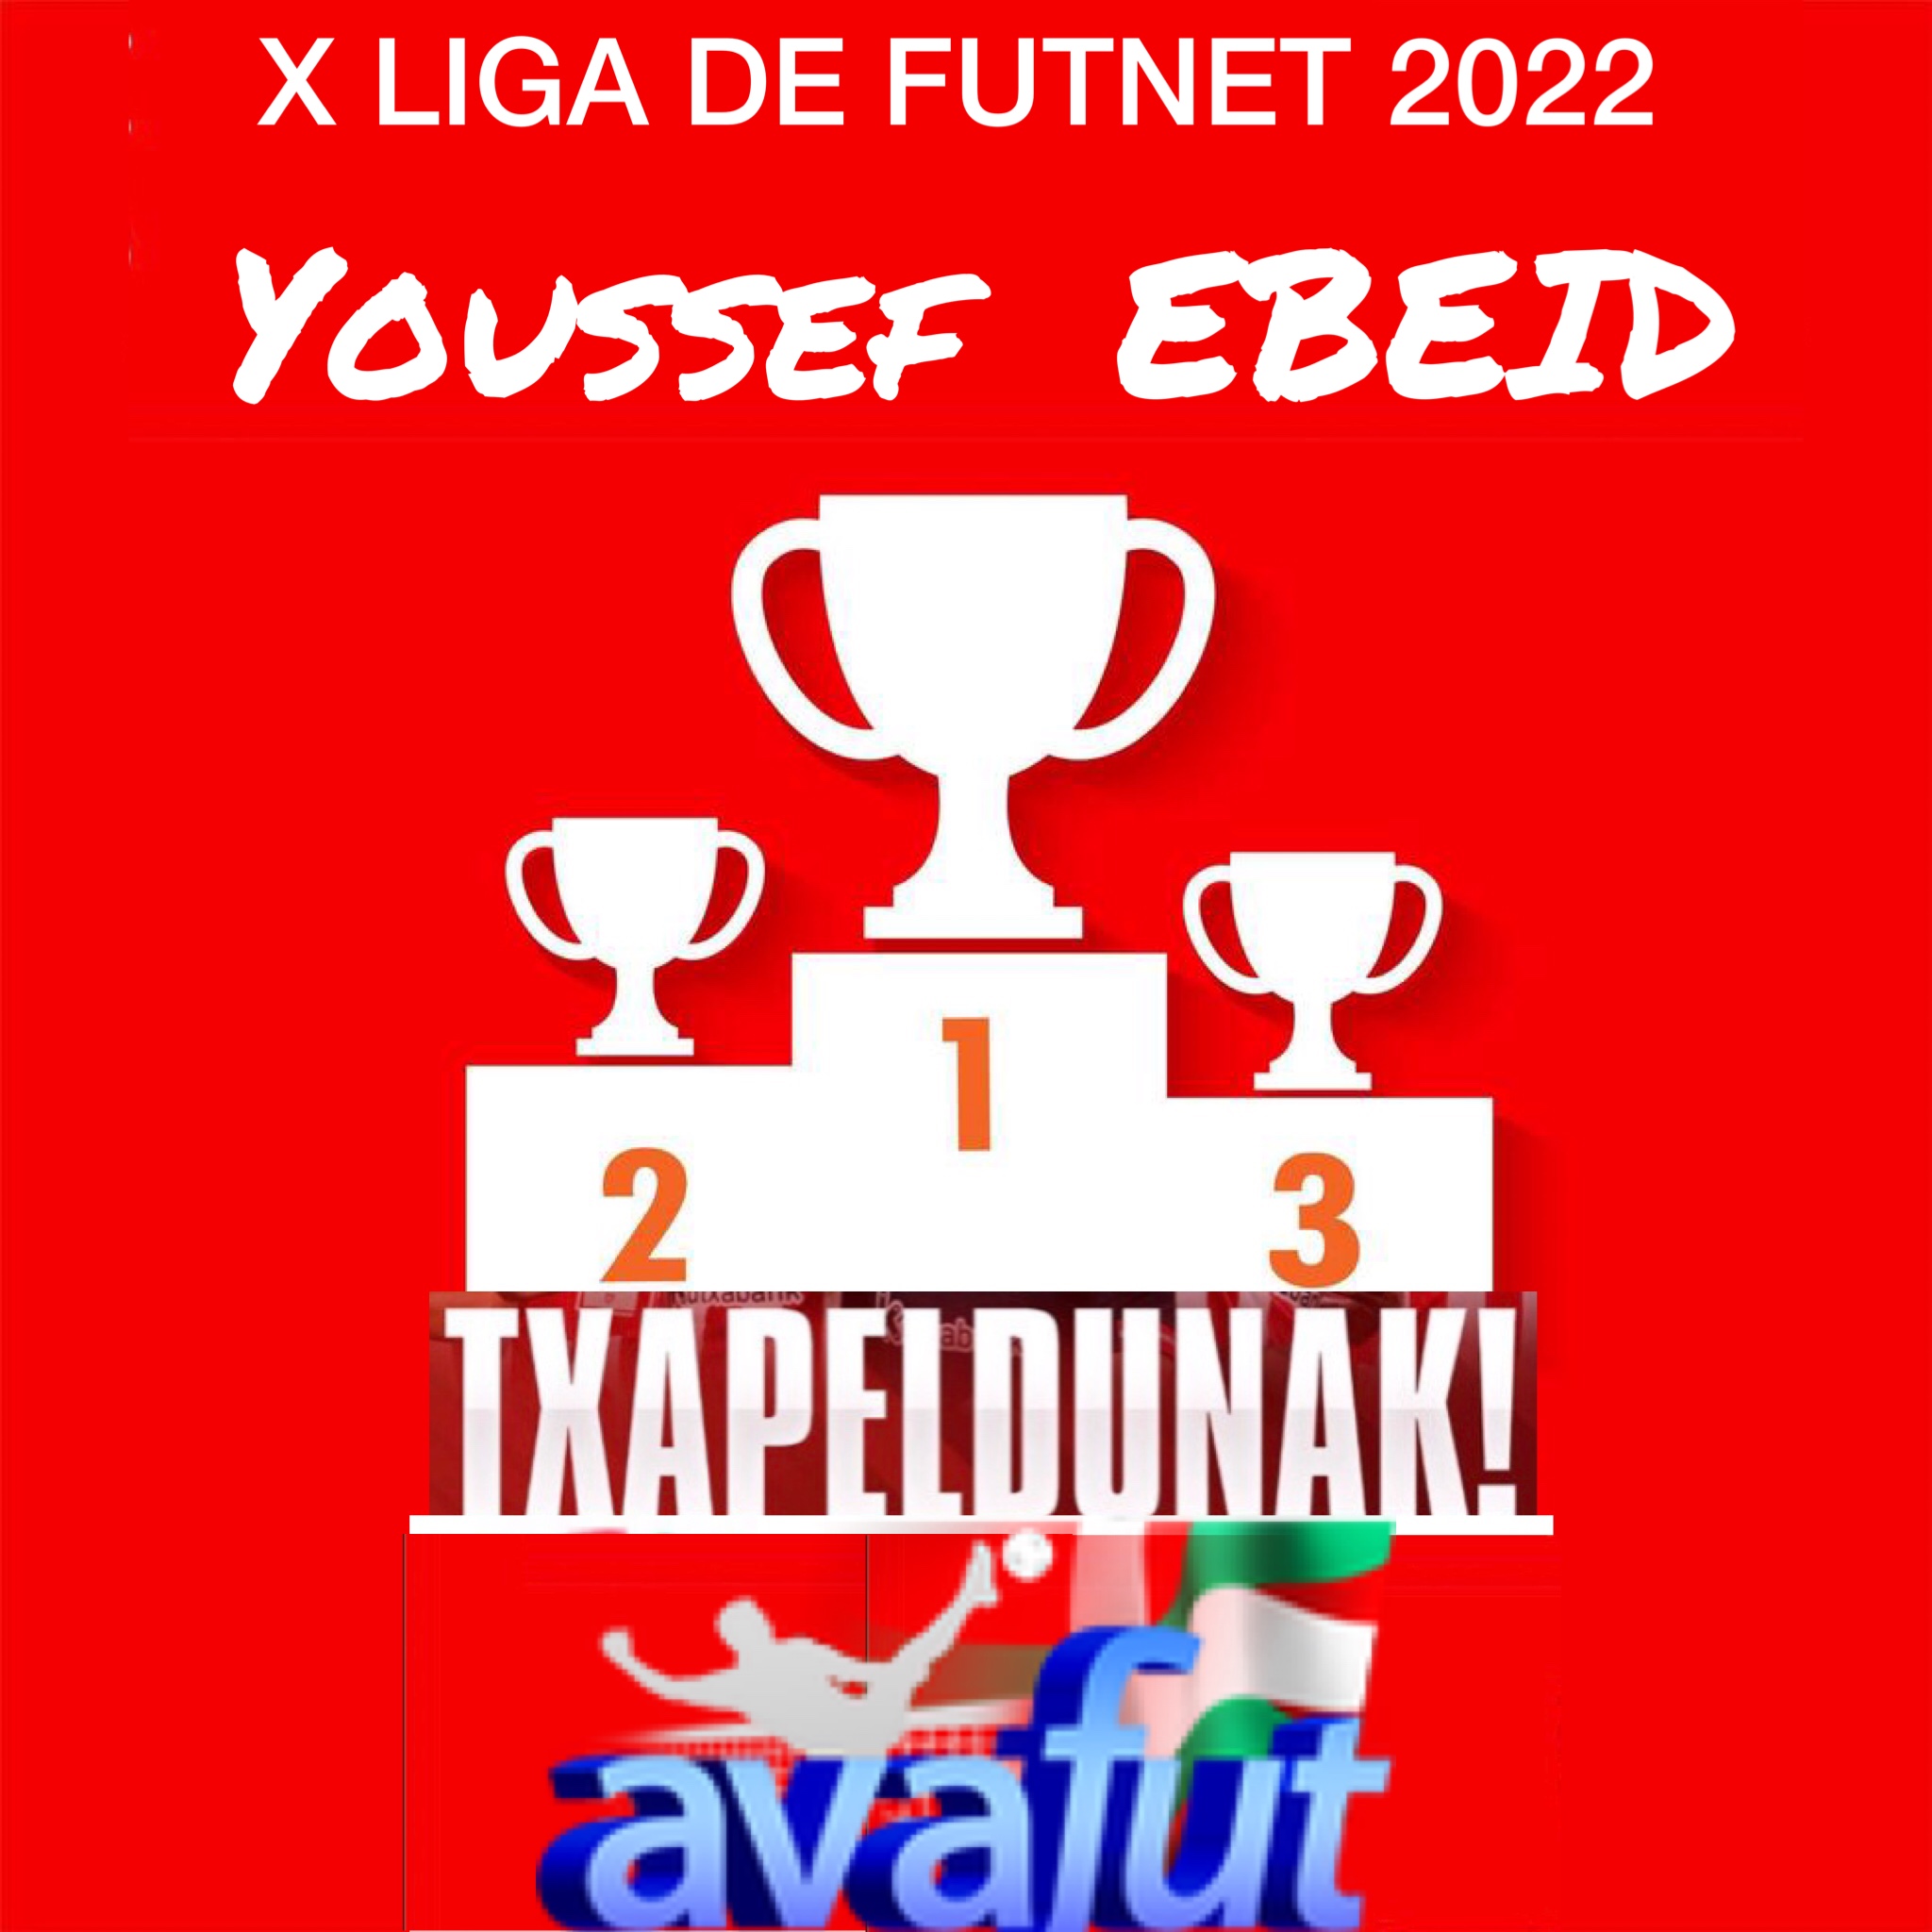 Youssef Ebeid, campeón de la Liga Mixta de Futnet 2022.